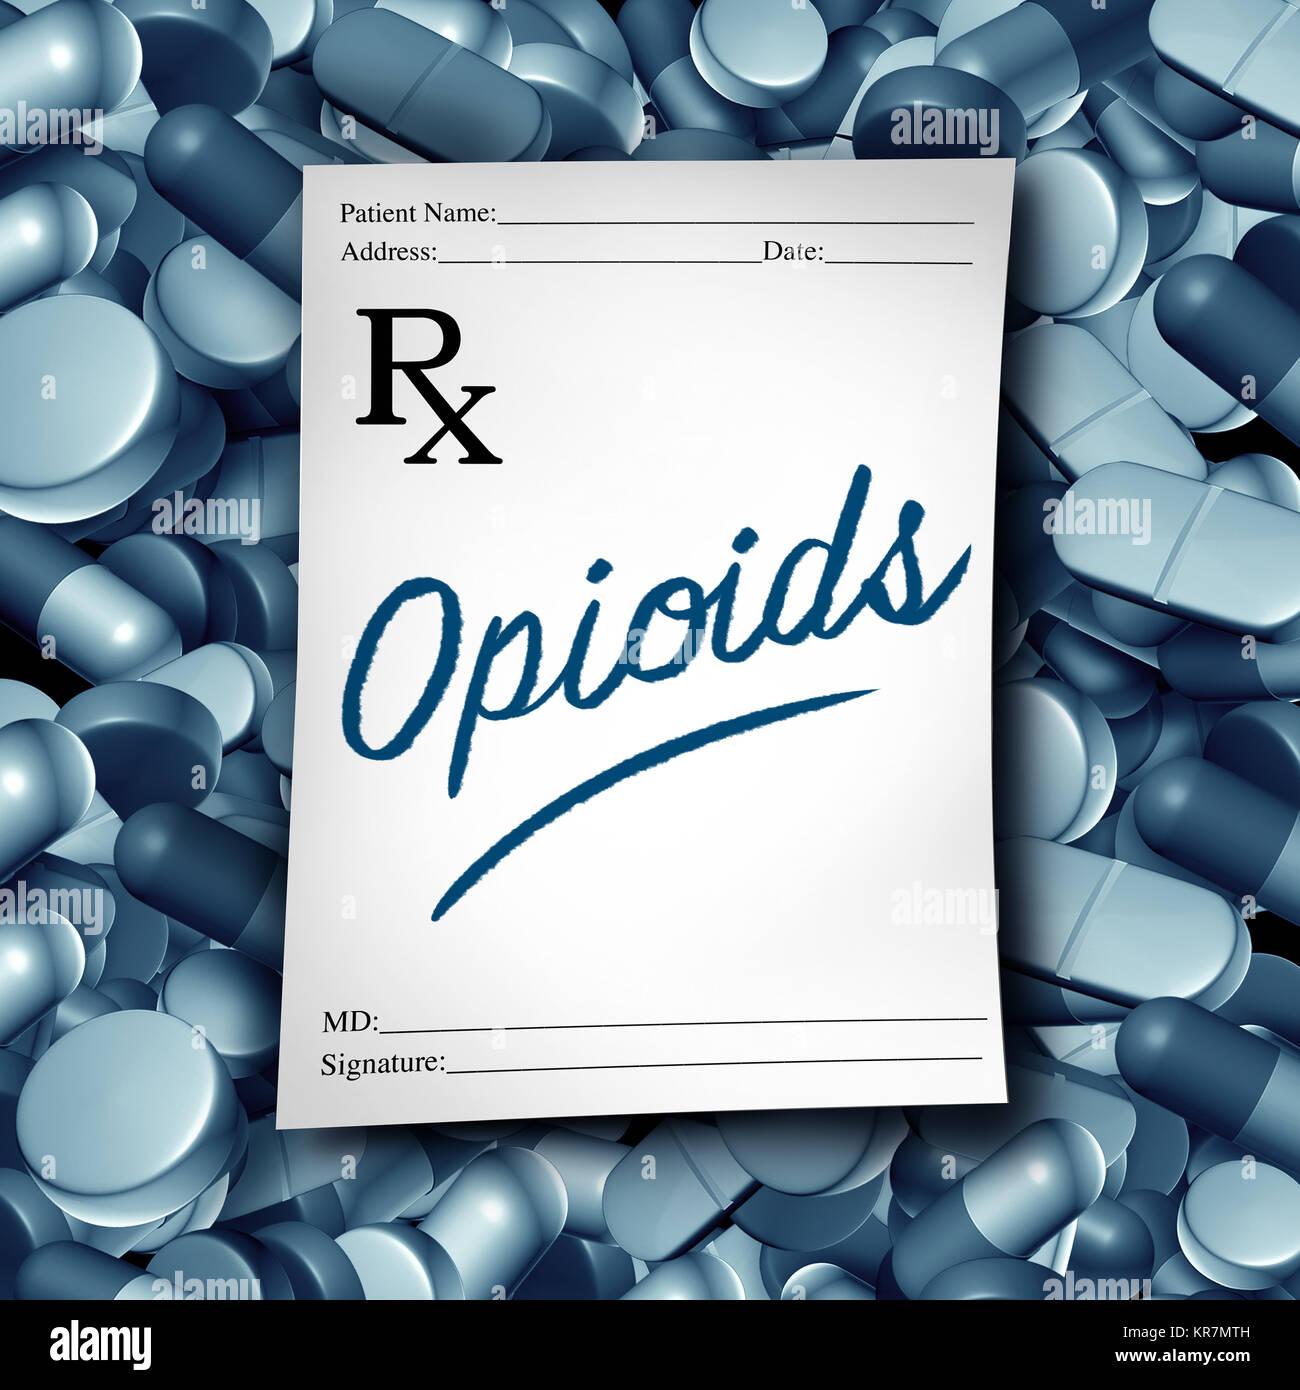 Los opioides médico receta médica de riesgo para la salud y opioide píldoras crisis como un medicamento recetado painkiller adicción epidemia concepto. Foto de stock